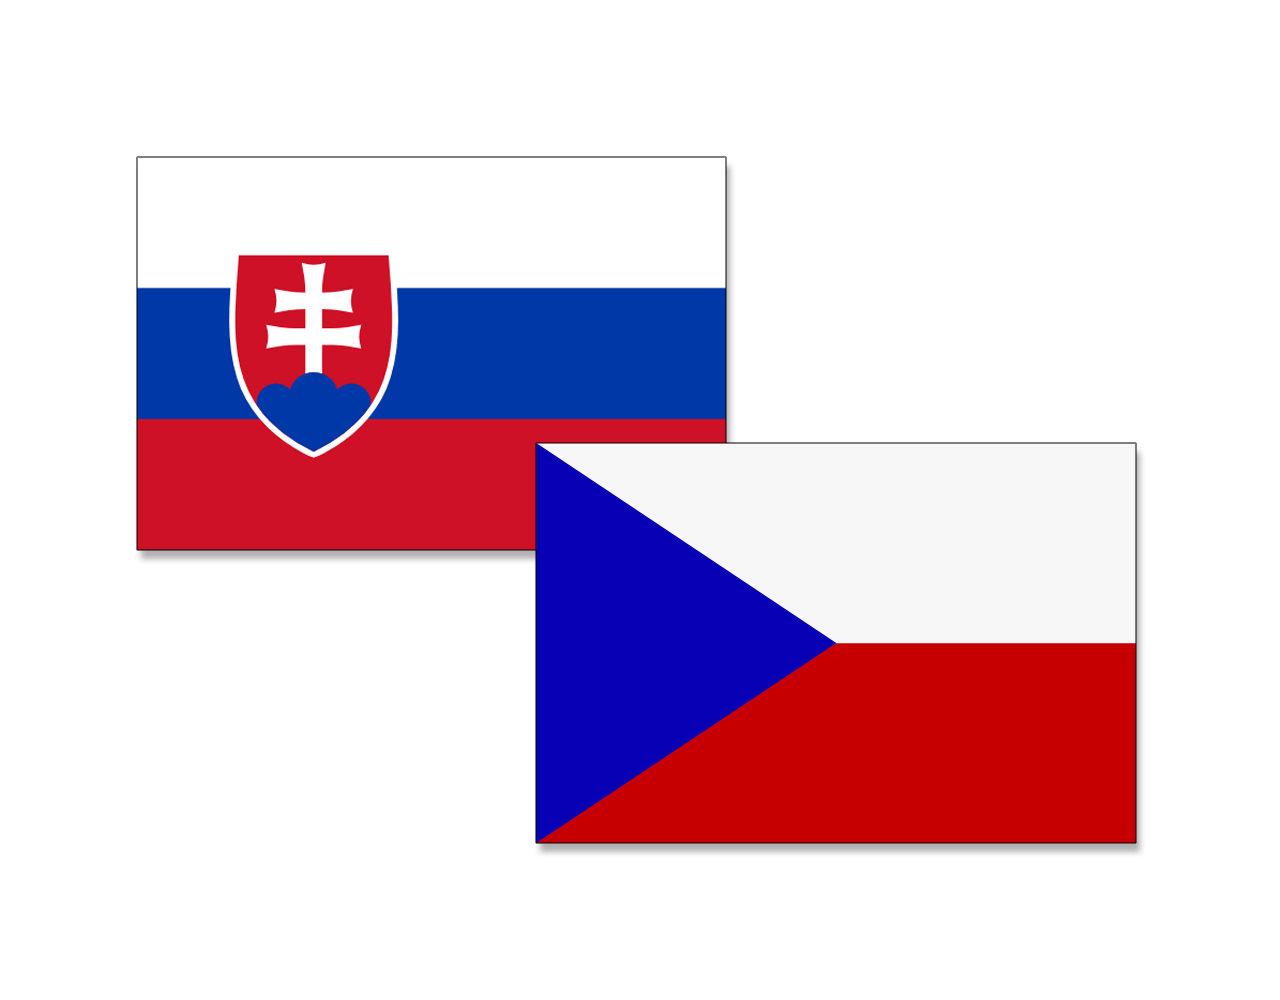 Banderas de Chequia y Eslovaquia